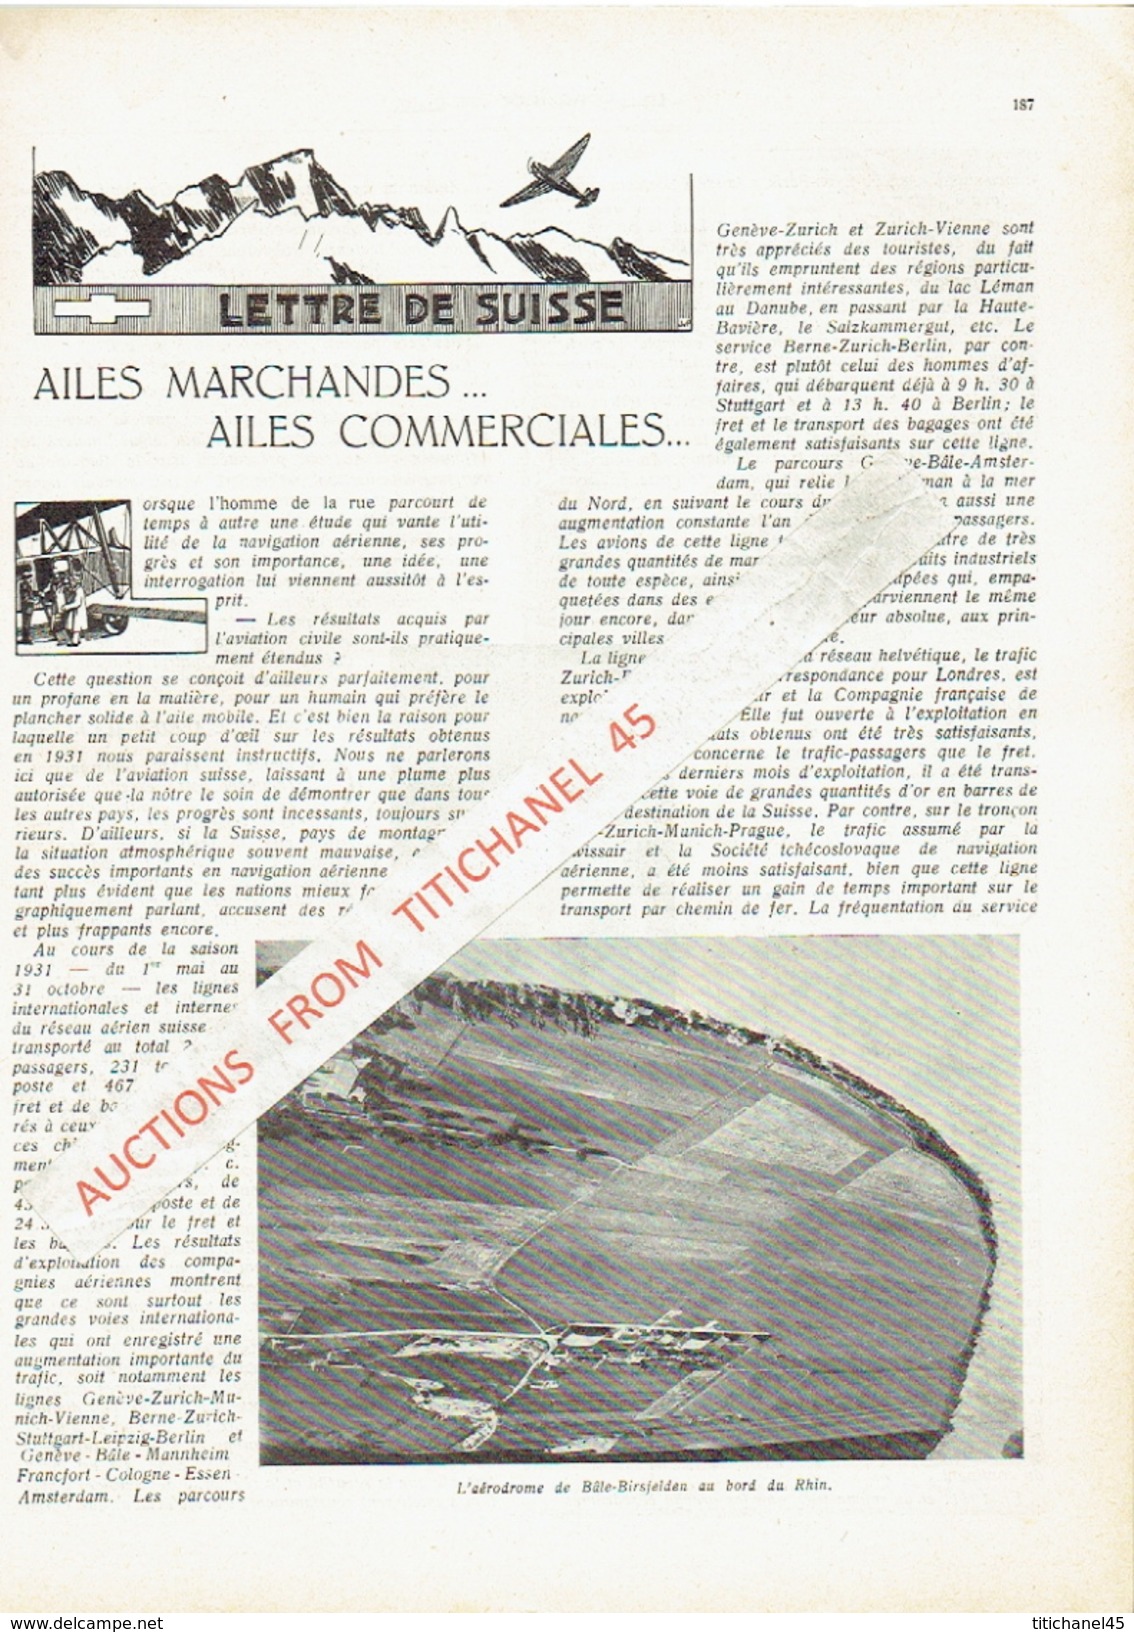 LA CONQUETE DE L'AIR 1932 n°4 -SABENA-CONGO-MINERVA-HYSPANO-SUIZA-BREDA 33-PICCARD-KIPFER-LOCKHEED SIRIUS-NORTHROP ALPHA